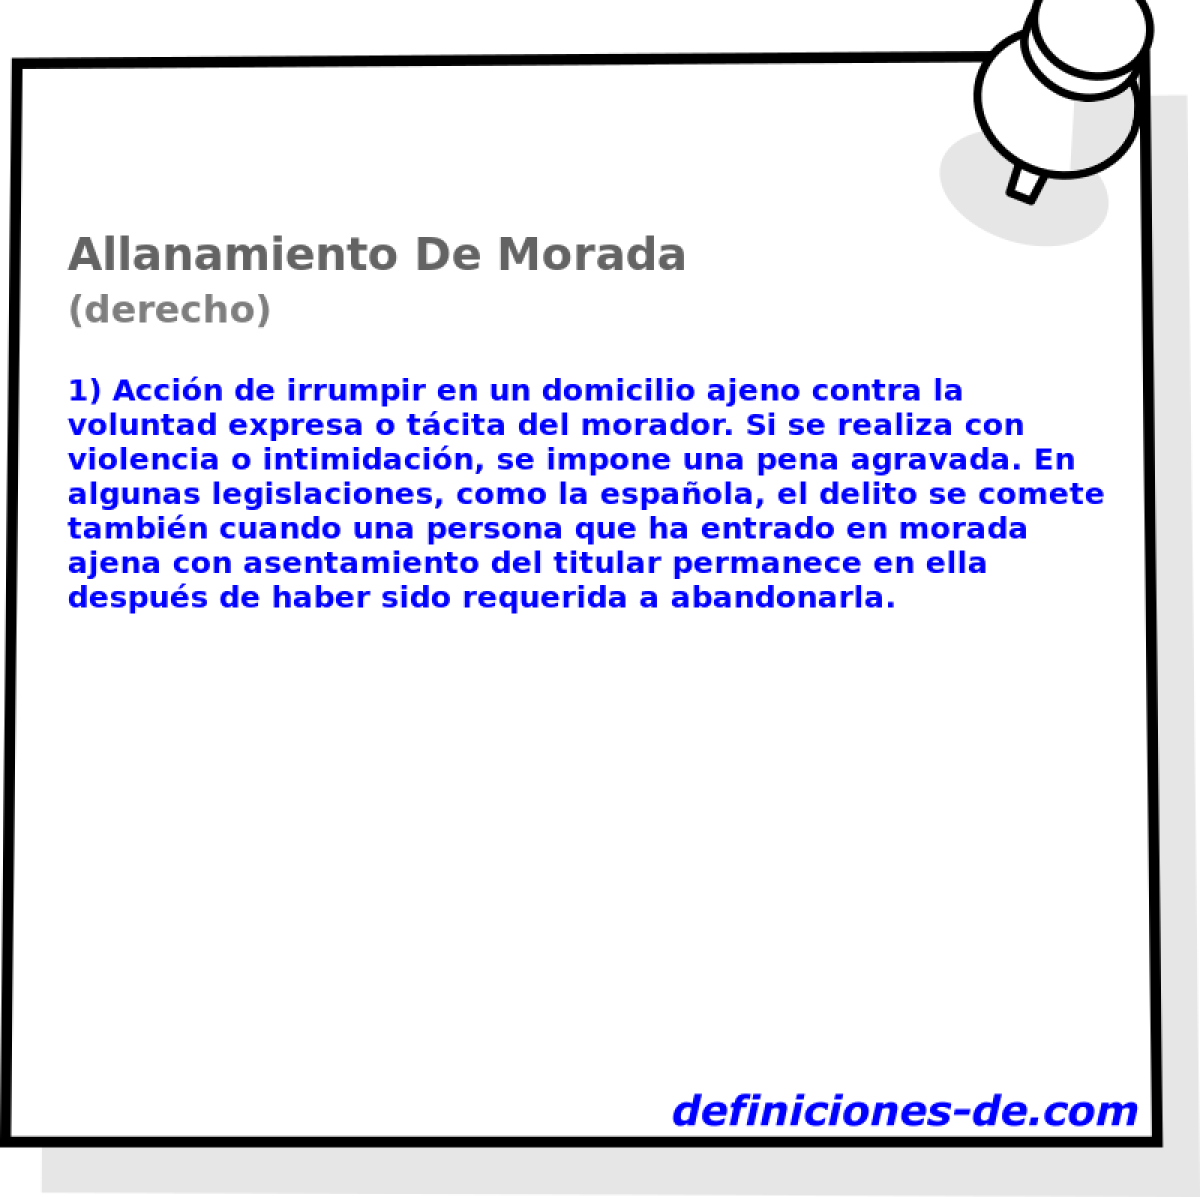 Allanamiento De Morada (derecho)